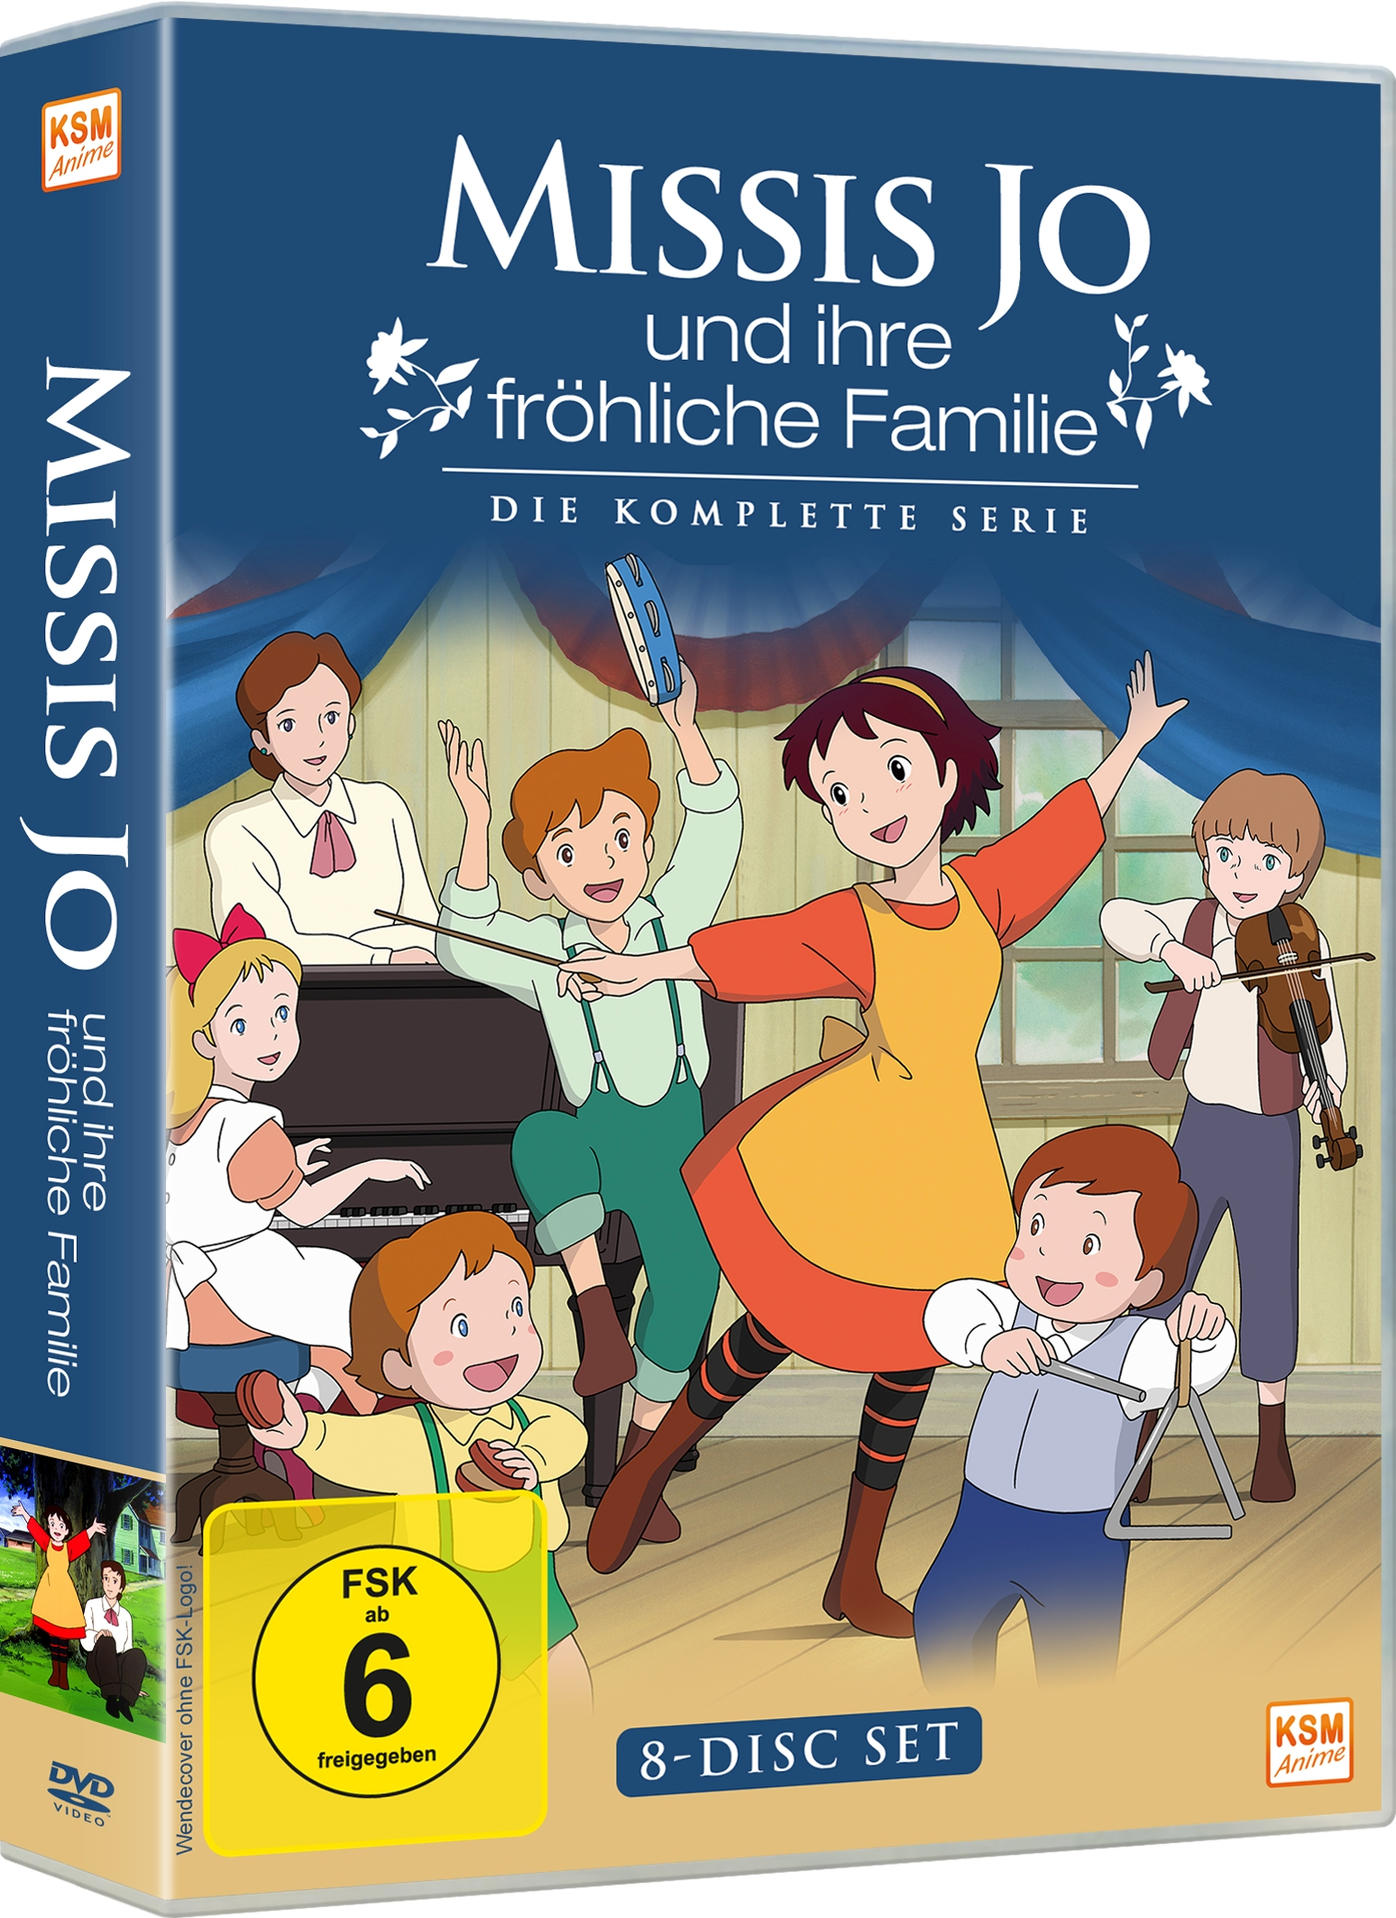 Jo komplette und Familie fröhliche Missis Die - Serie DVD ihre